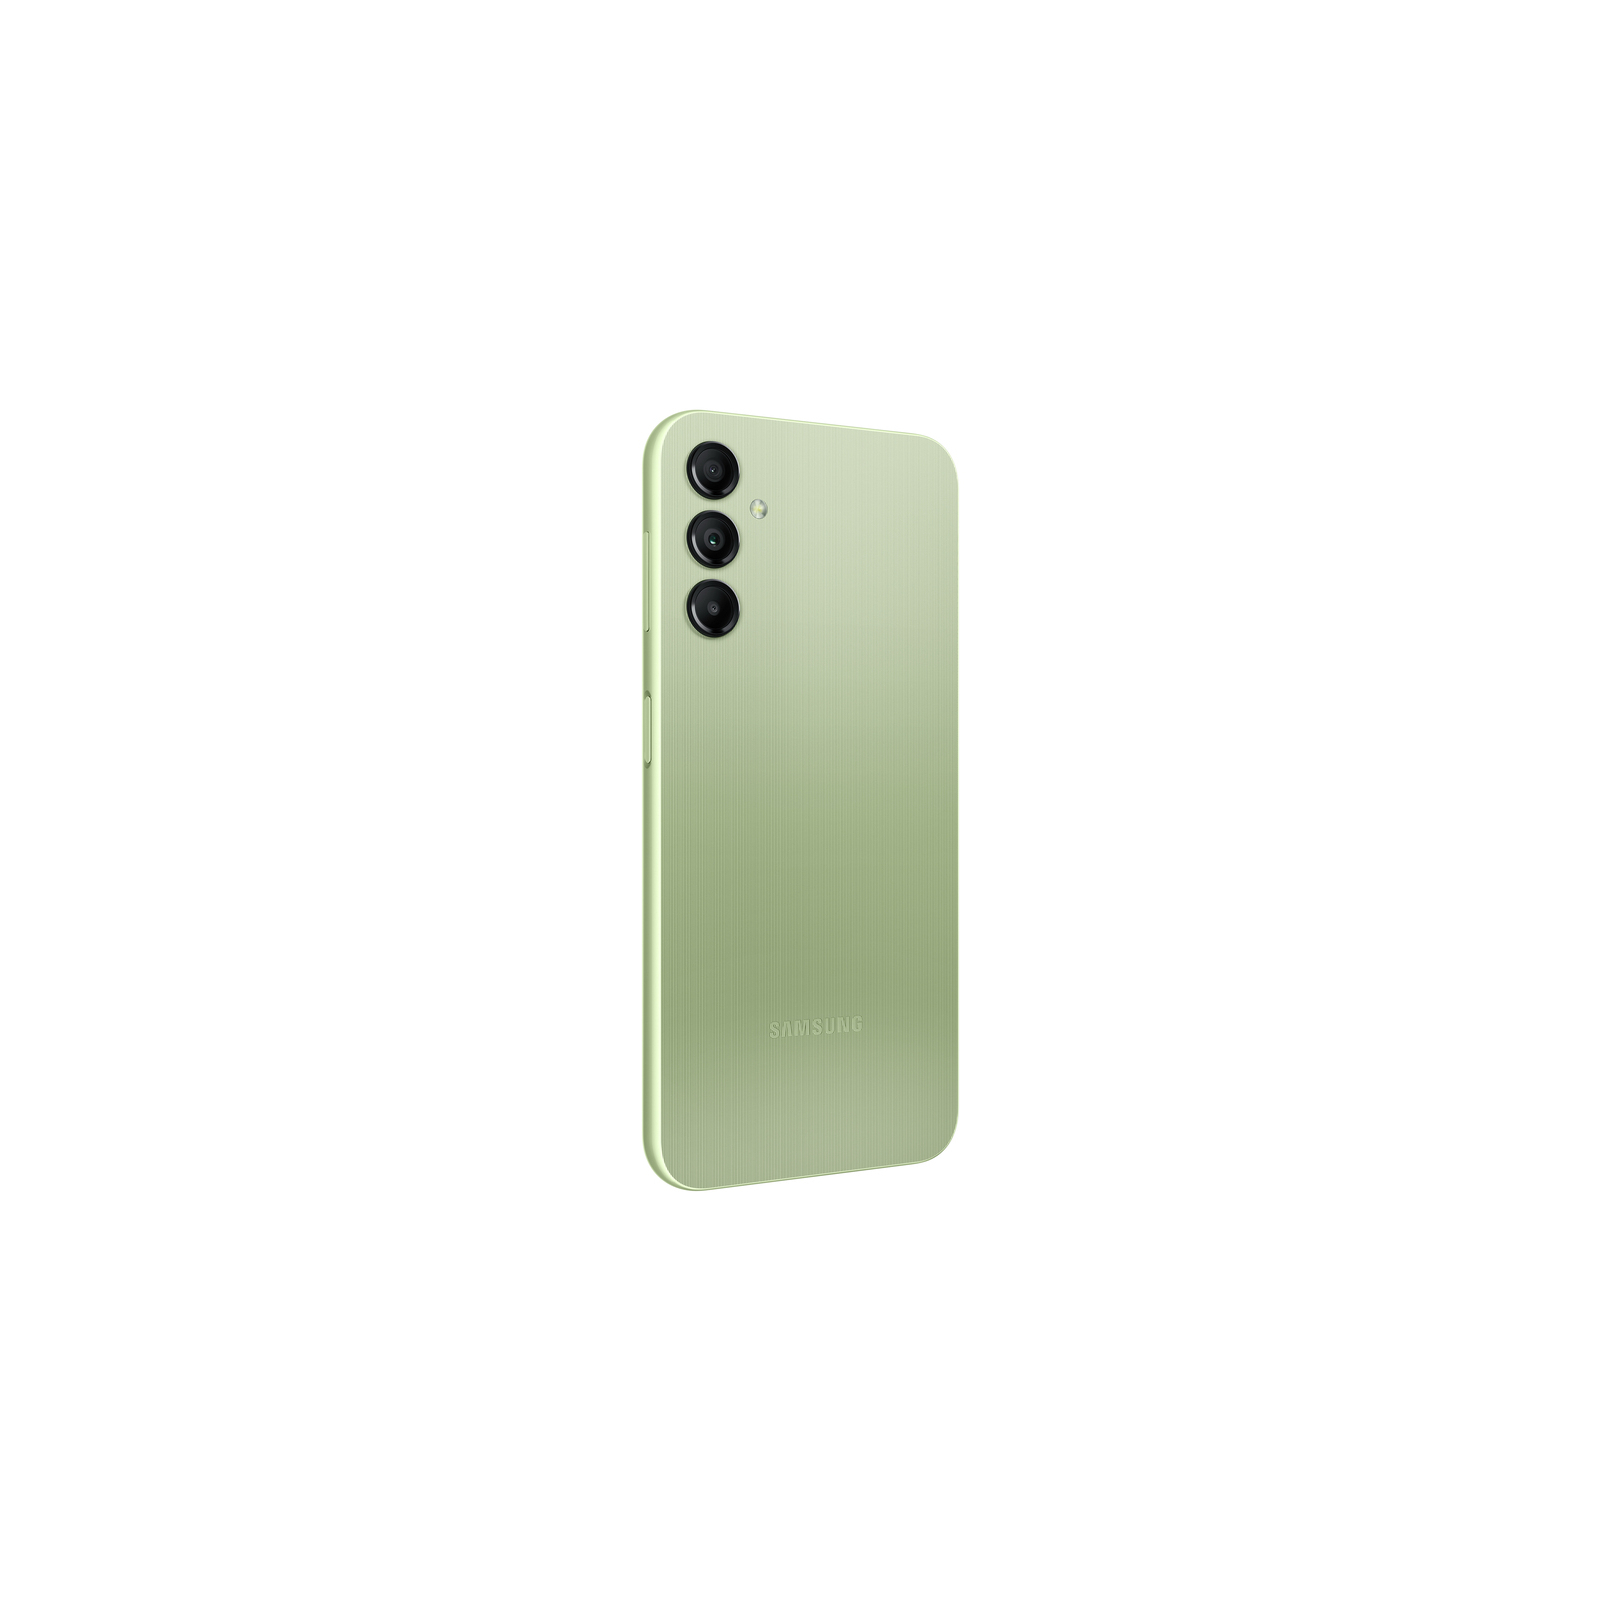 Мобильный телефон Samsung Galaxy A14 LTE 4/64Gb Black (SM-A145FZKUSEK) изображение 7